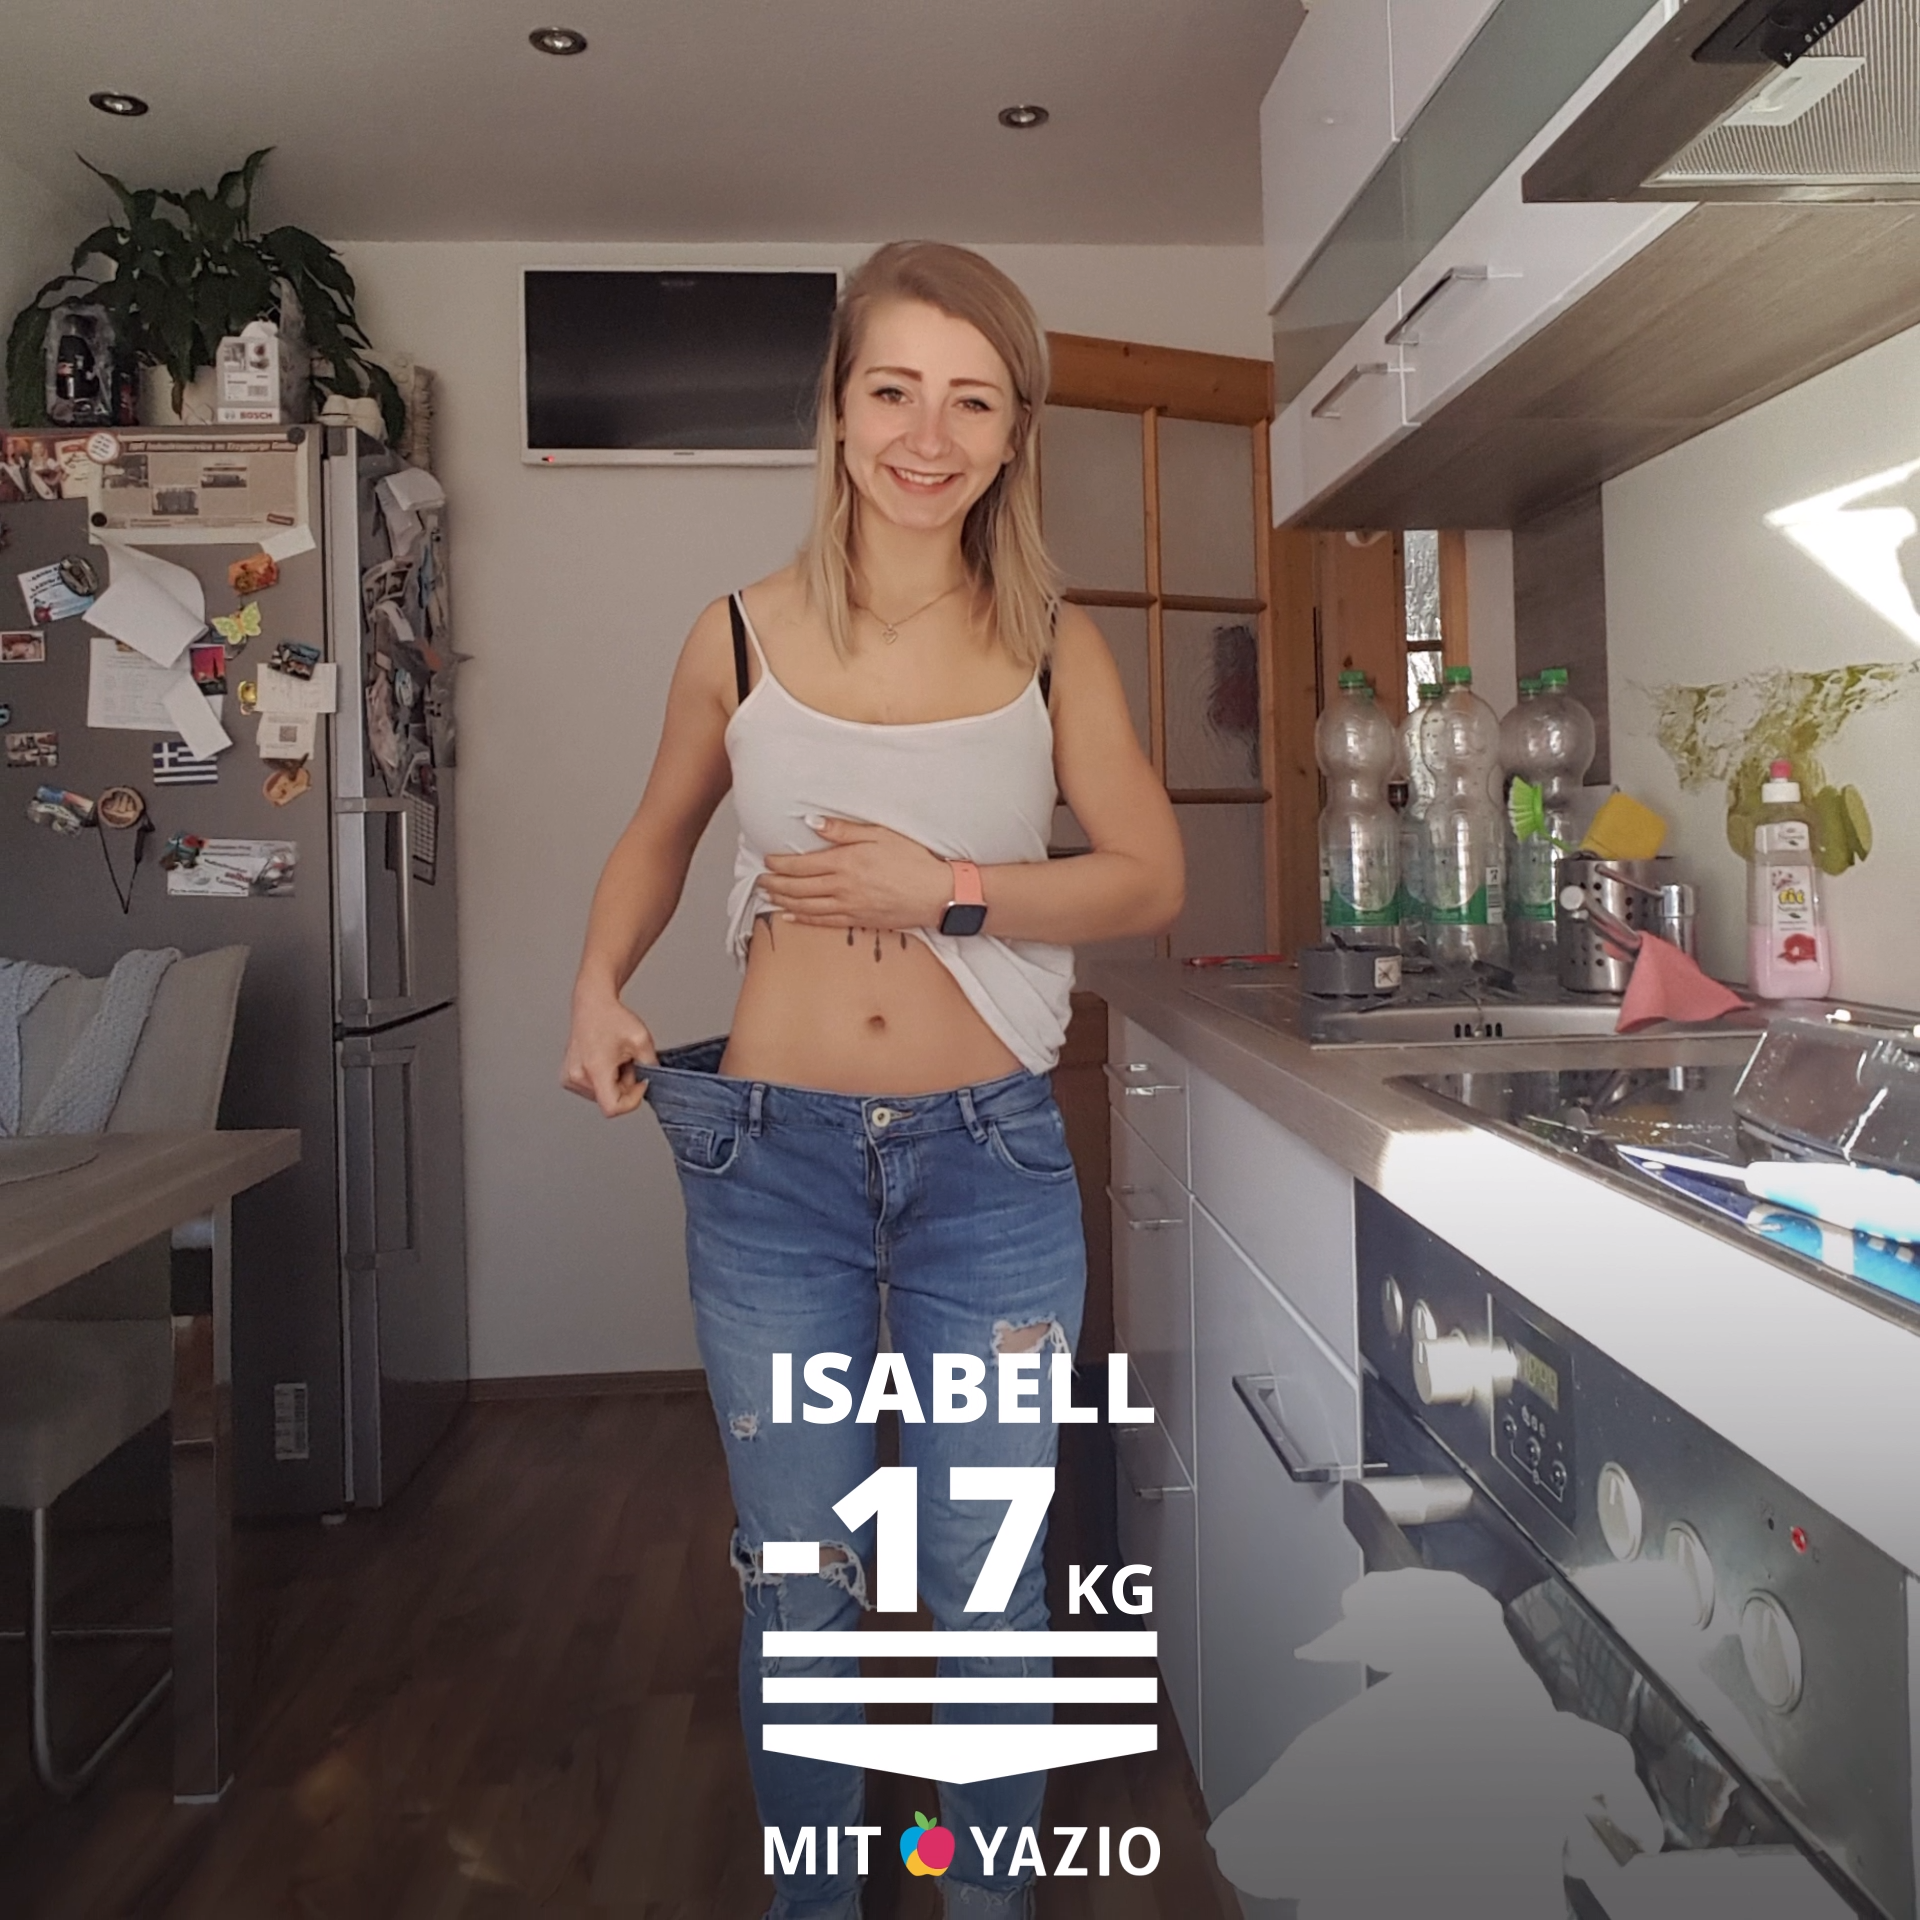 Isabell hat mit YAZIO 17 KG abgenommen рџљЂрџ’Ї -   18 fitness Videos frauen ideas